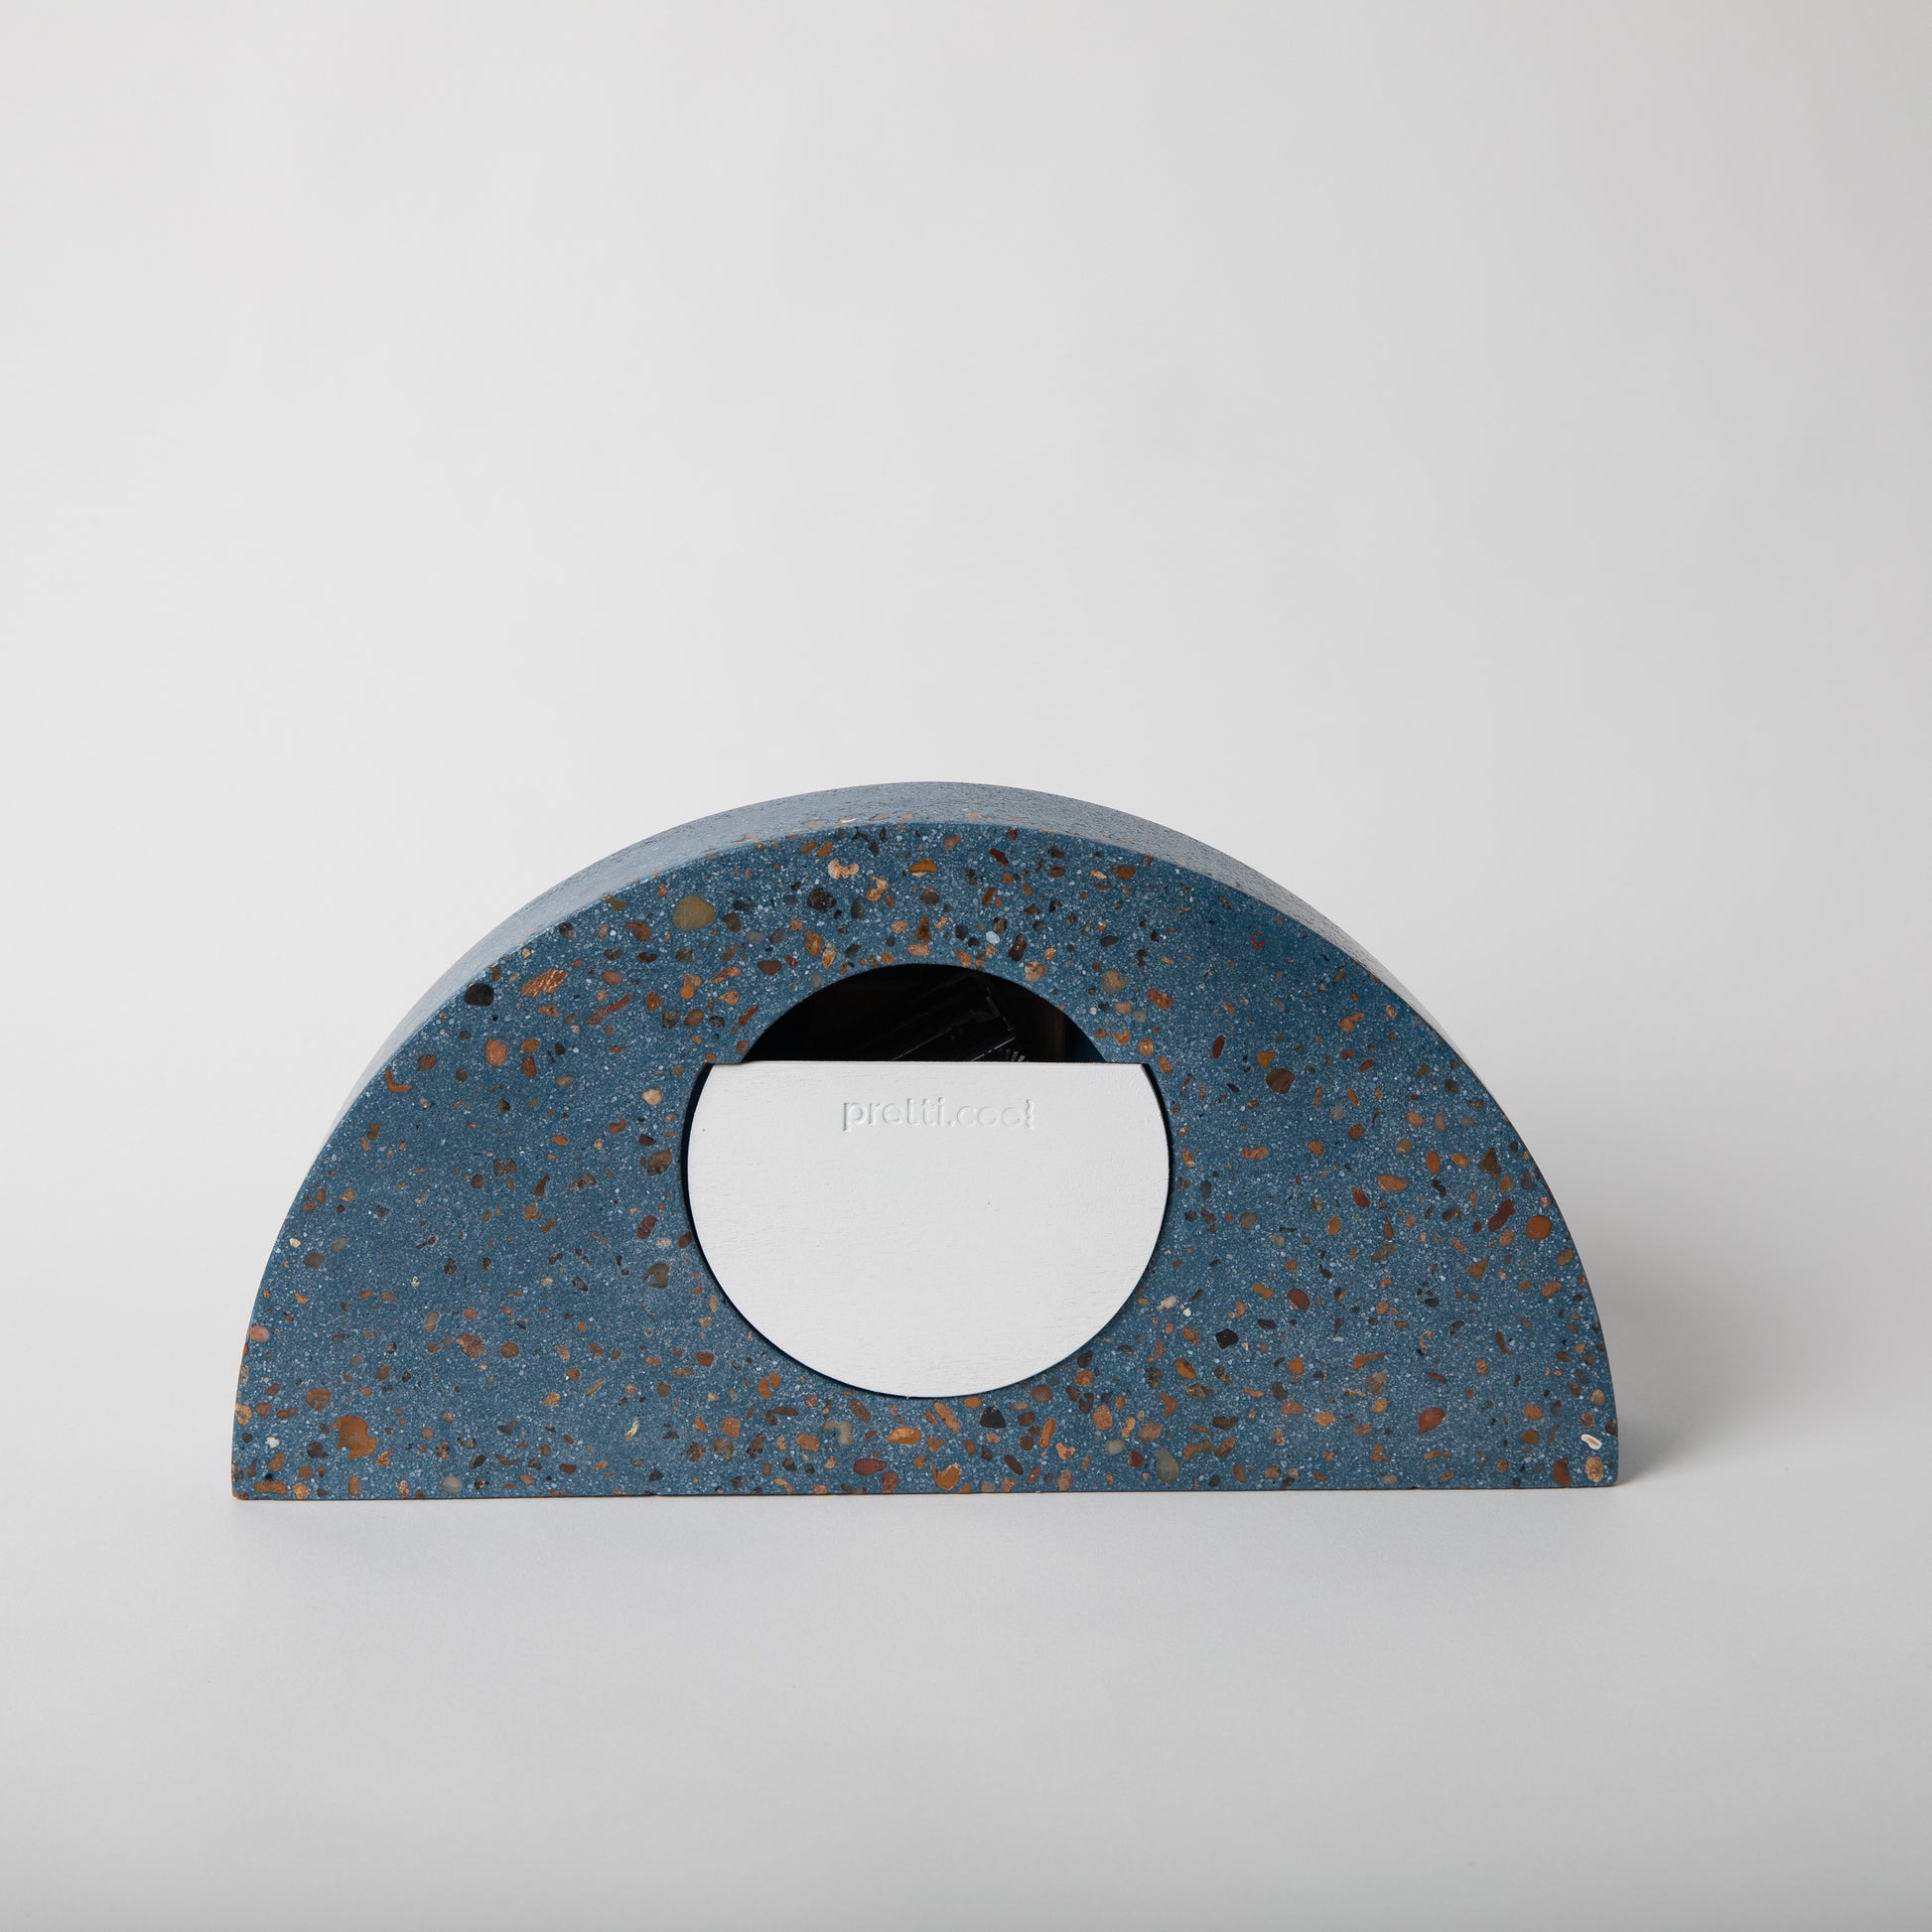 Terrazzo concrete clock in half moon shape in cobalt.